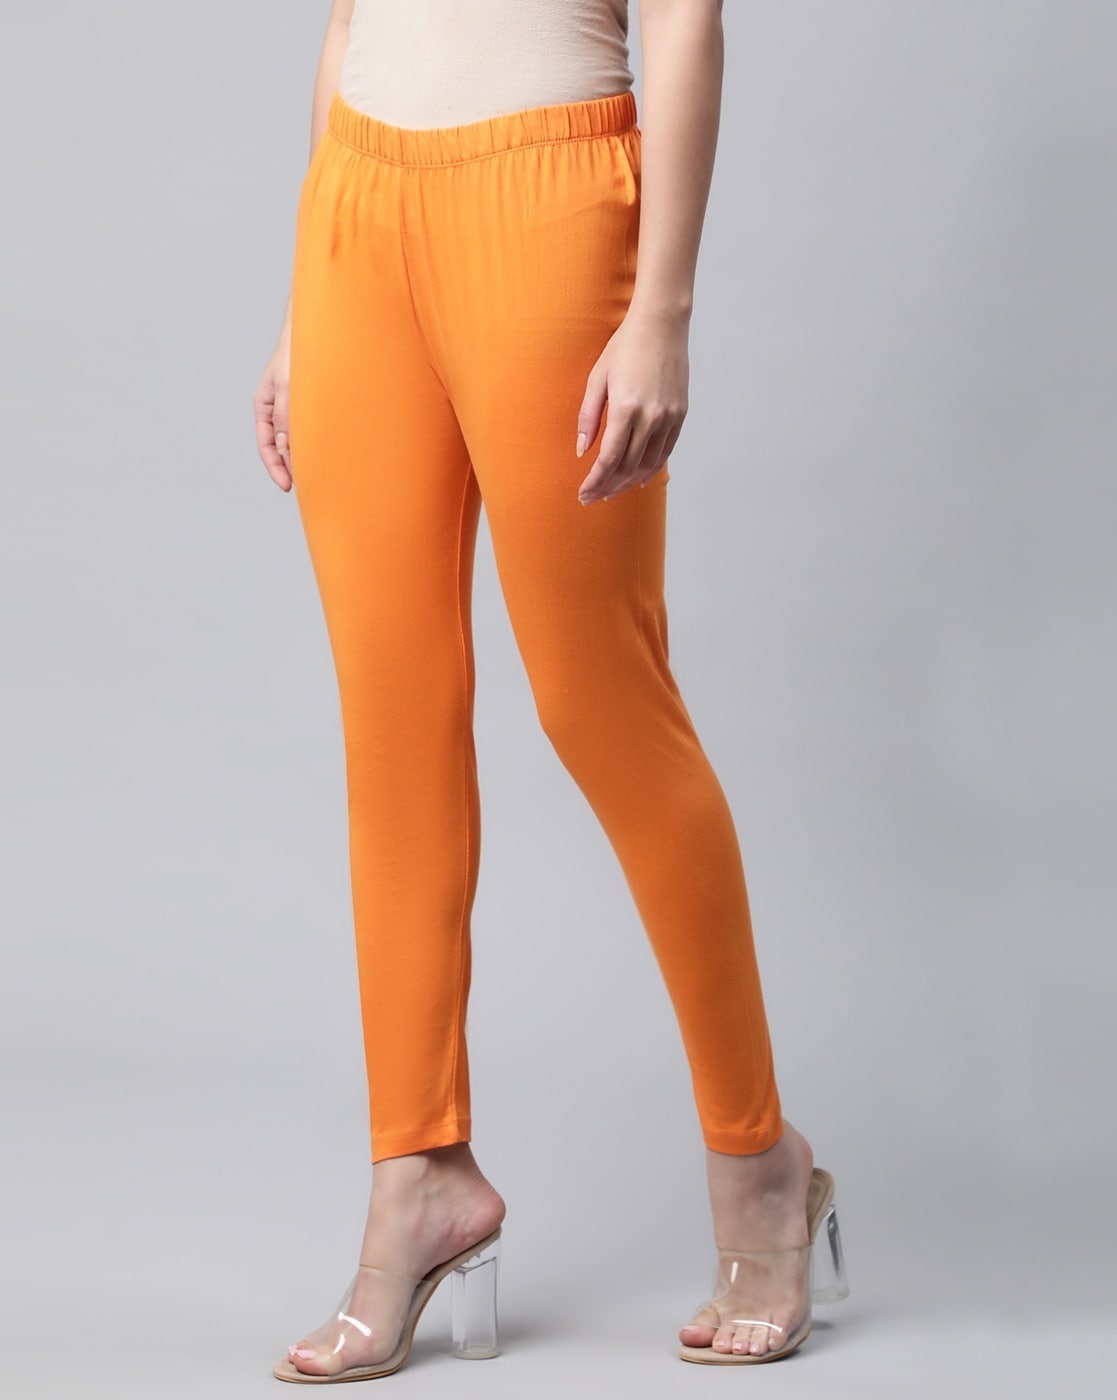 Cotton Lycra Solid Plus Size Ankle Length Leggings Orange color